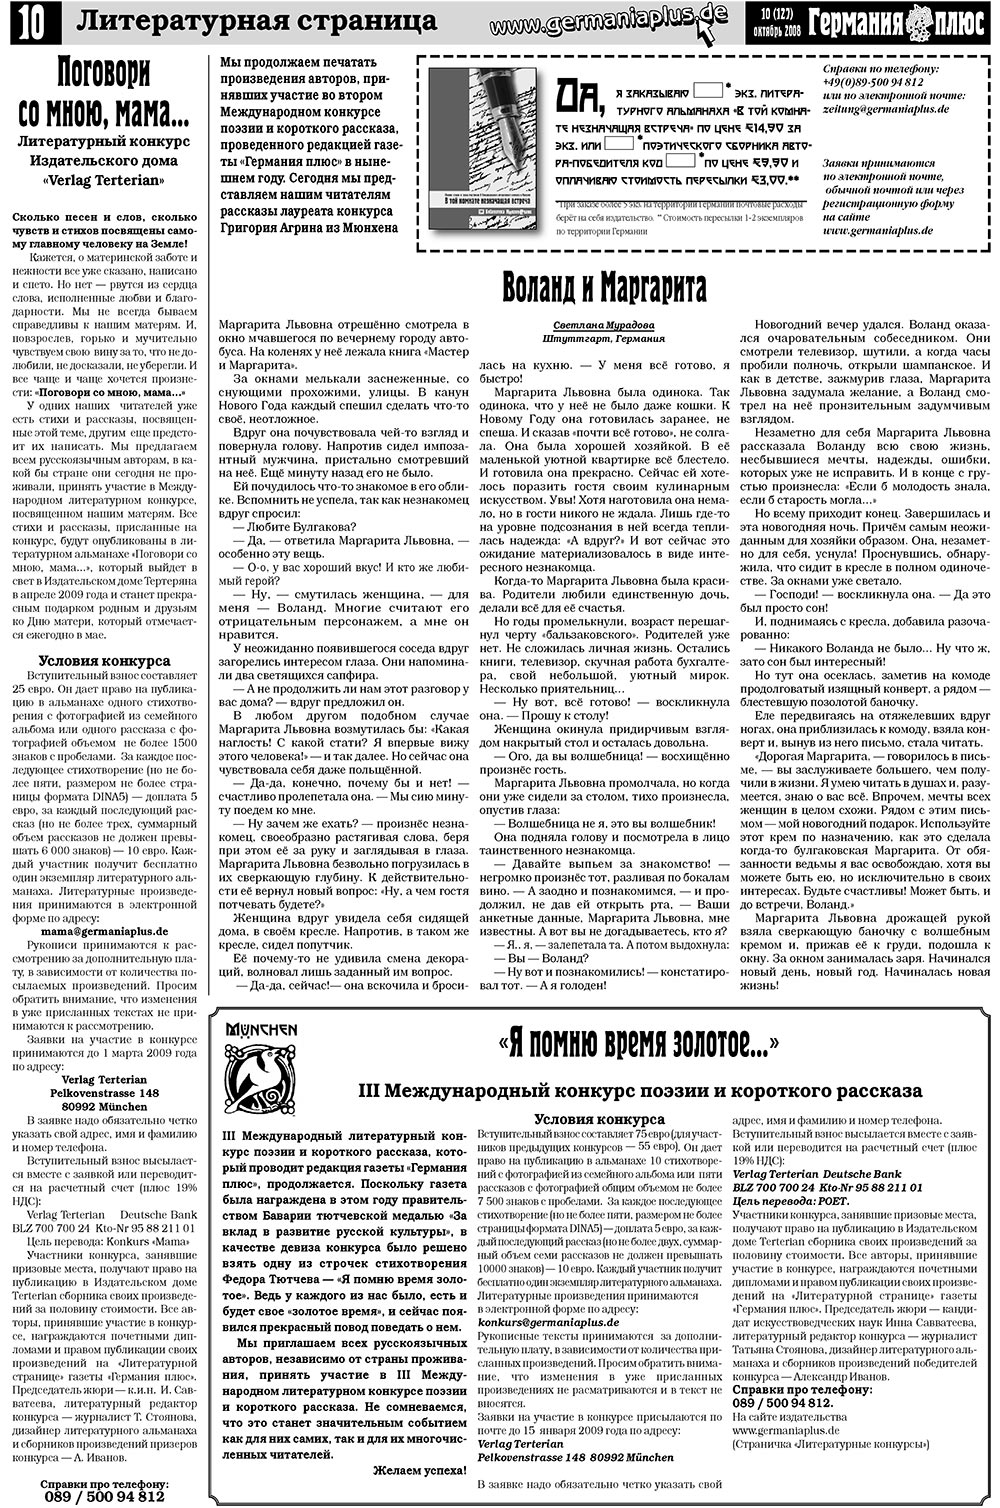 Германия плюс, газета. 2008 №10 стр.14